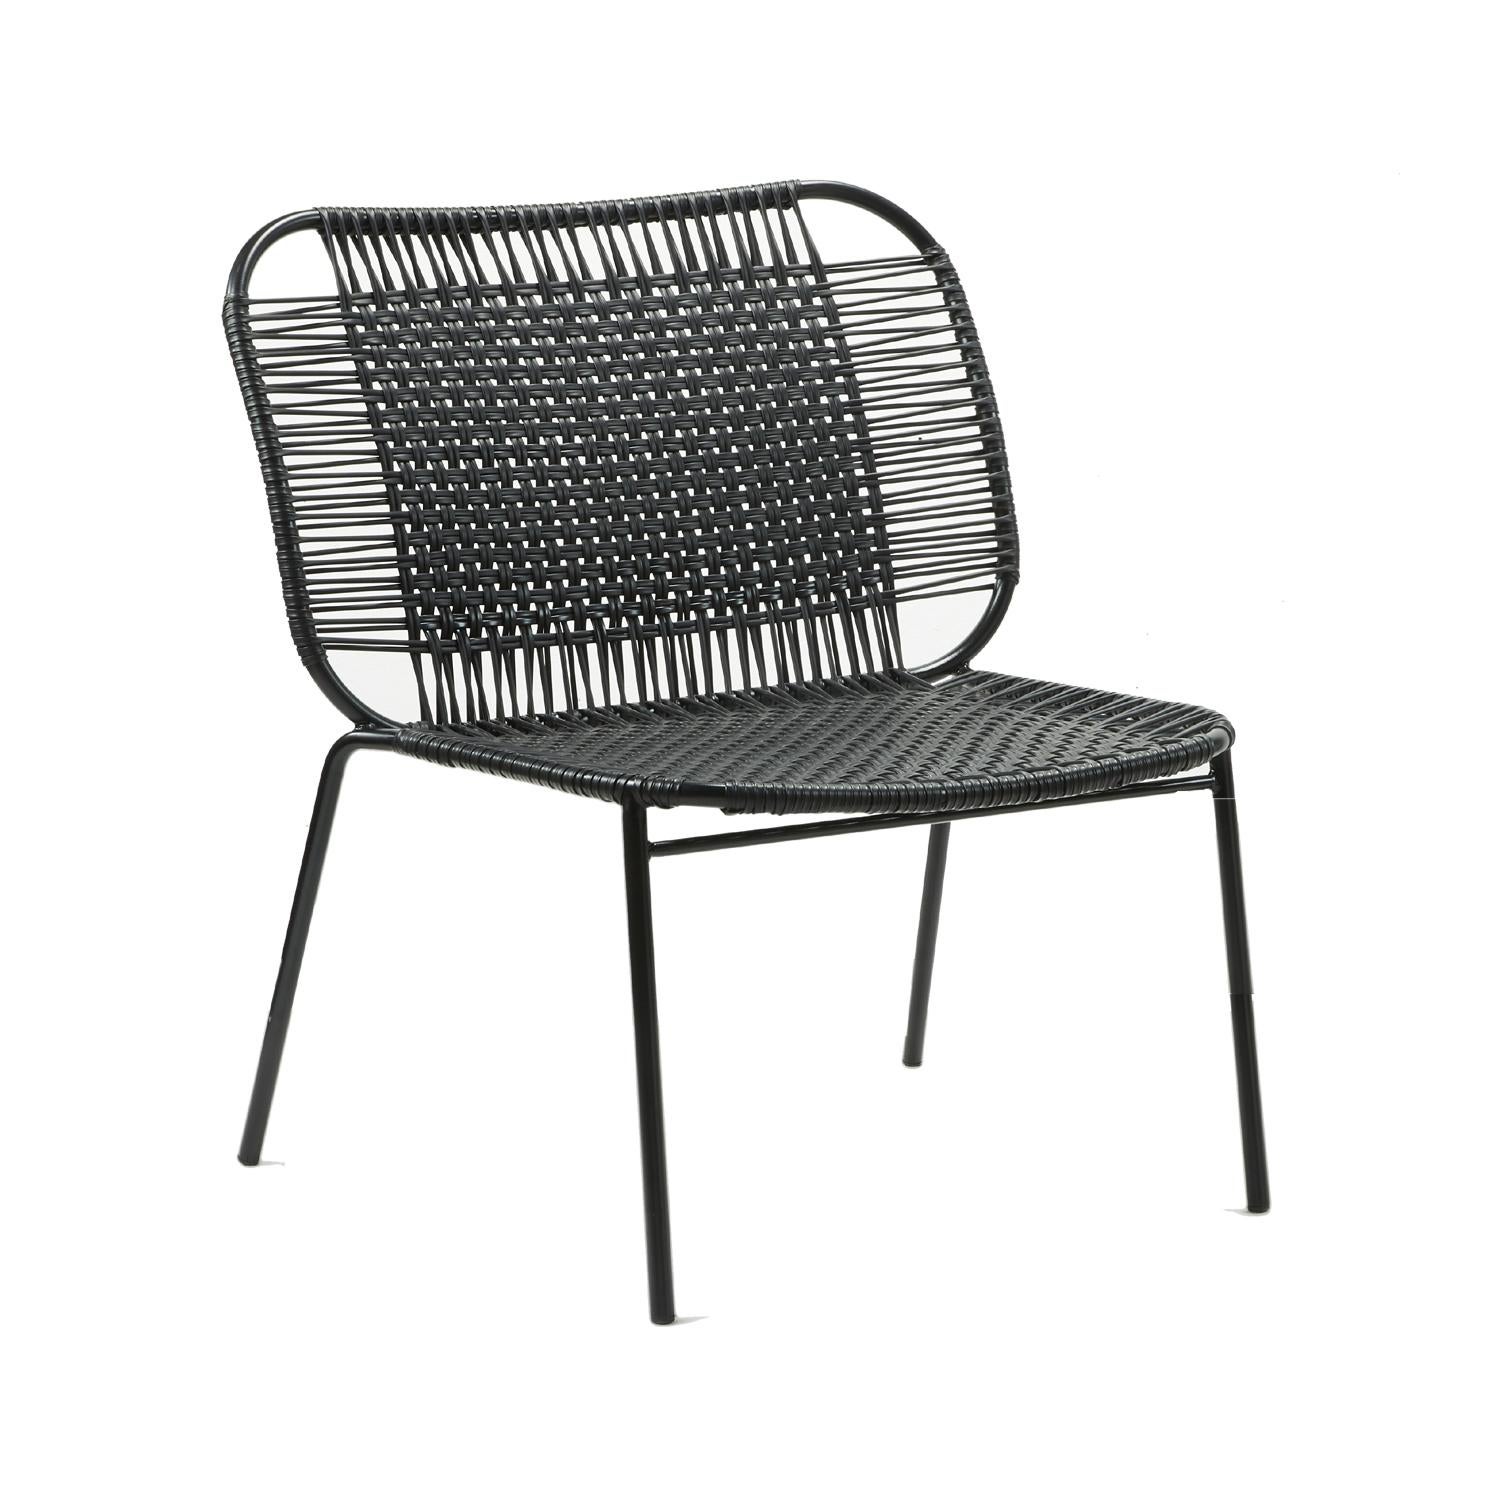 Ensemble de 4 chaises basses noires Cielo lounge de Sebastian Herkner
Matériaux : Tubes d'acier galvanisés et revêtus de poudre. Les cordes en PVC sont fabriquées à partir de plastique recyclé.
Technique : Fabriqué à partir de plastique recyclé et